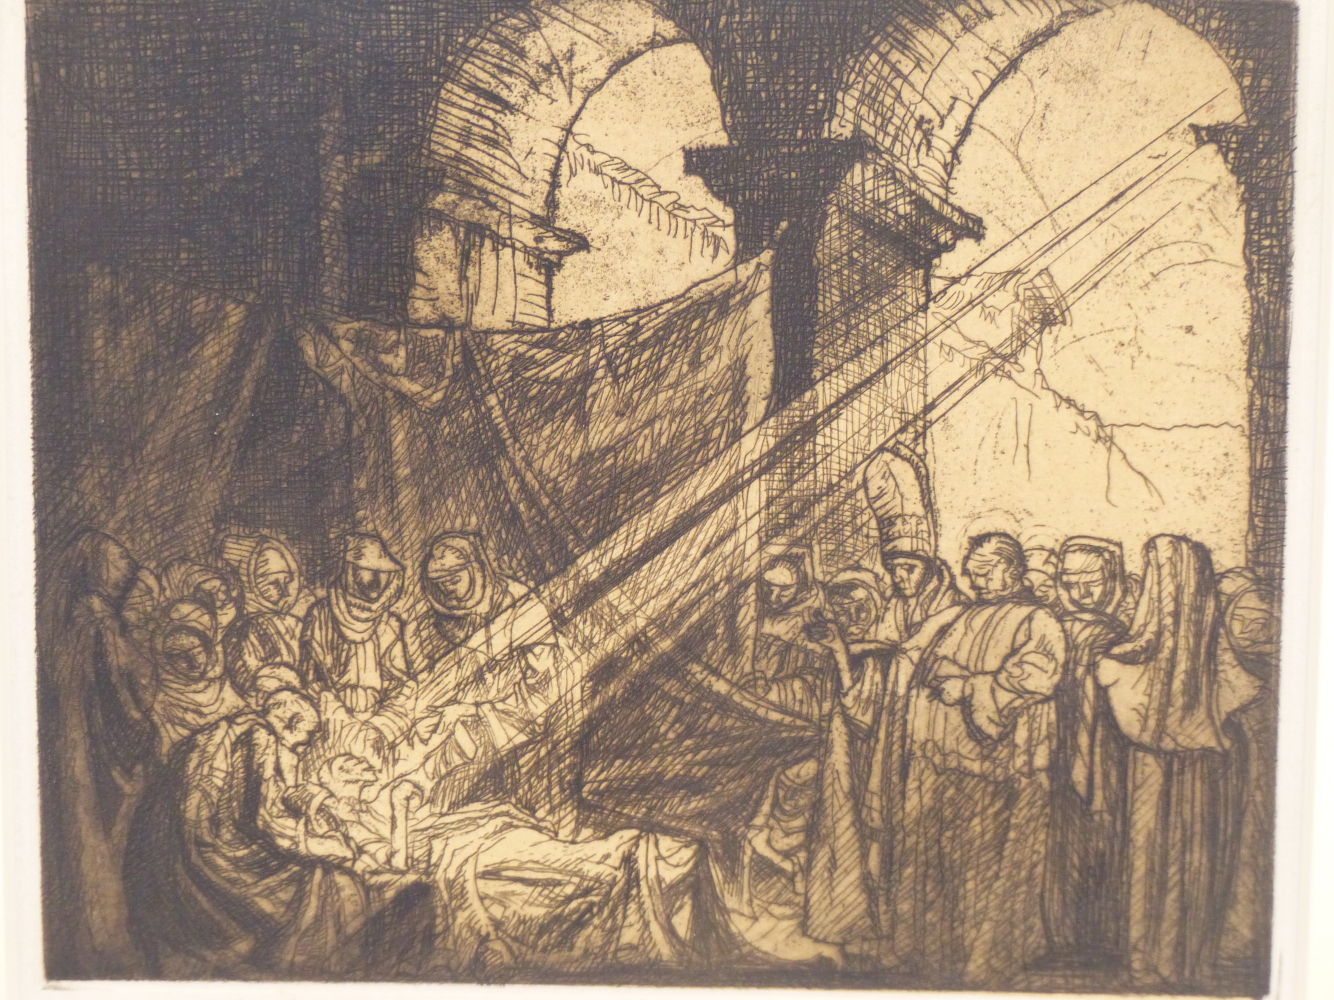 SIR FRANK BRANGWYN (1867-1956) ARR, THE DEATH OF SAINT MILBURGA, SIGNED IN PENCIL, ETCHING, 24 x